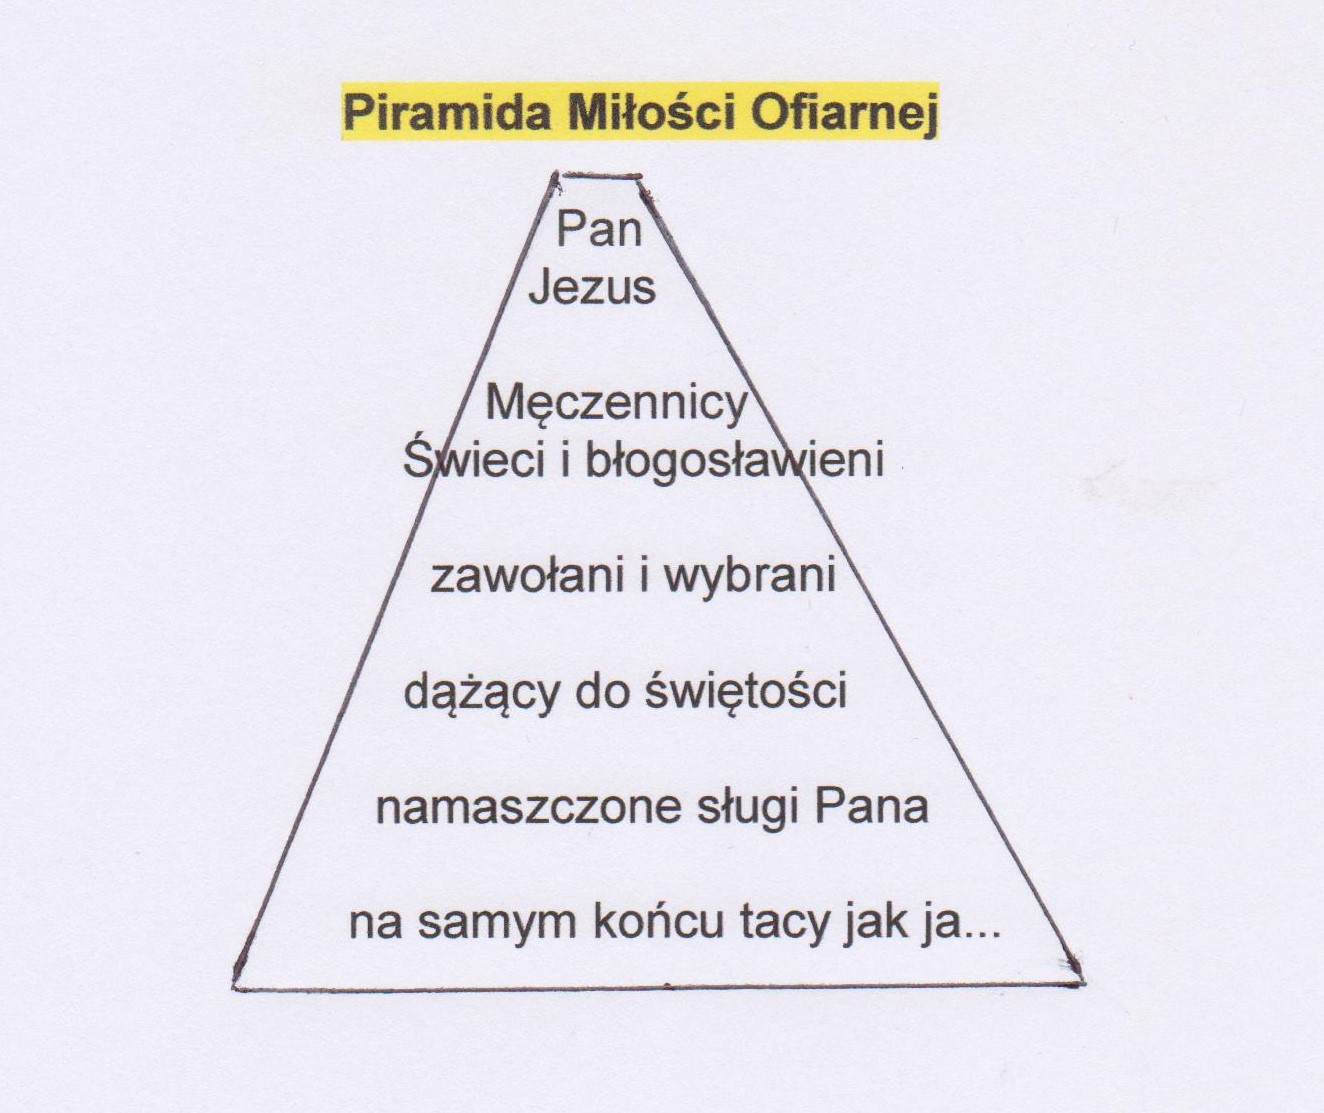 Piramida Miłości Miłosiernej